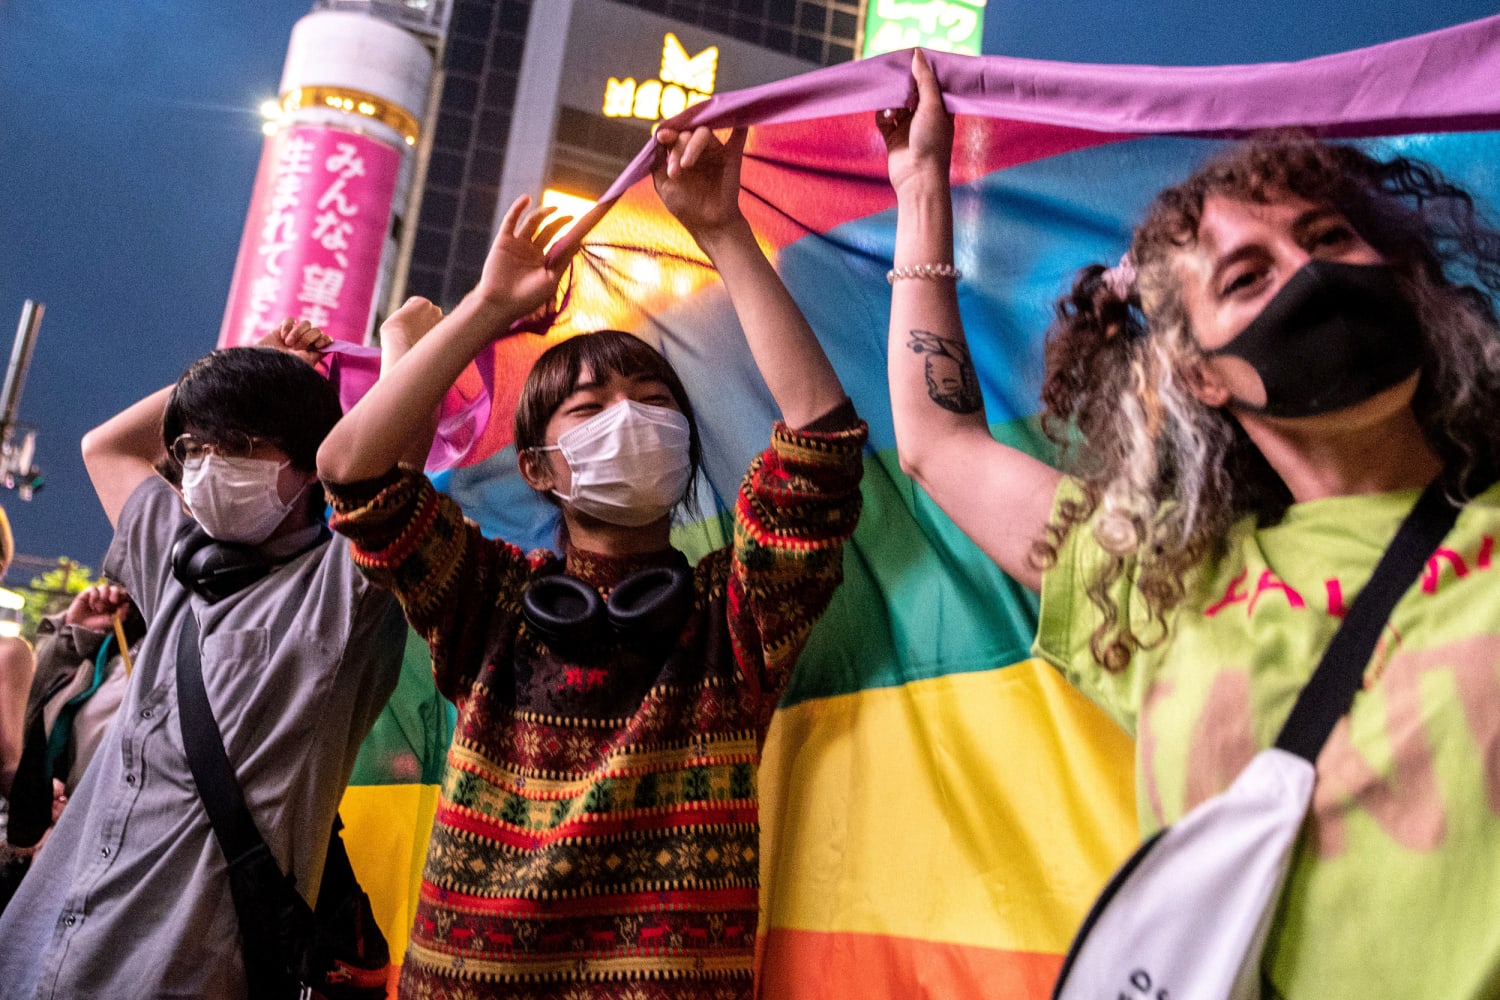 LGBTQ groups cheer Tokyo’s same-sex partnership move as big step forward